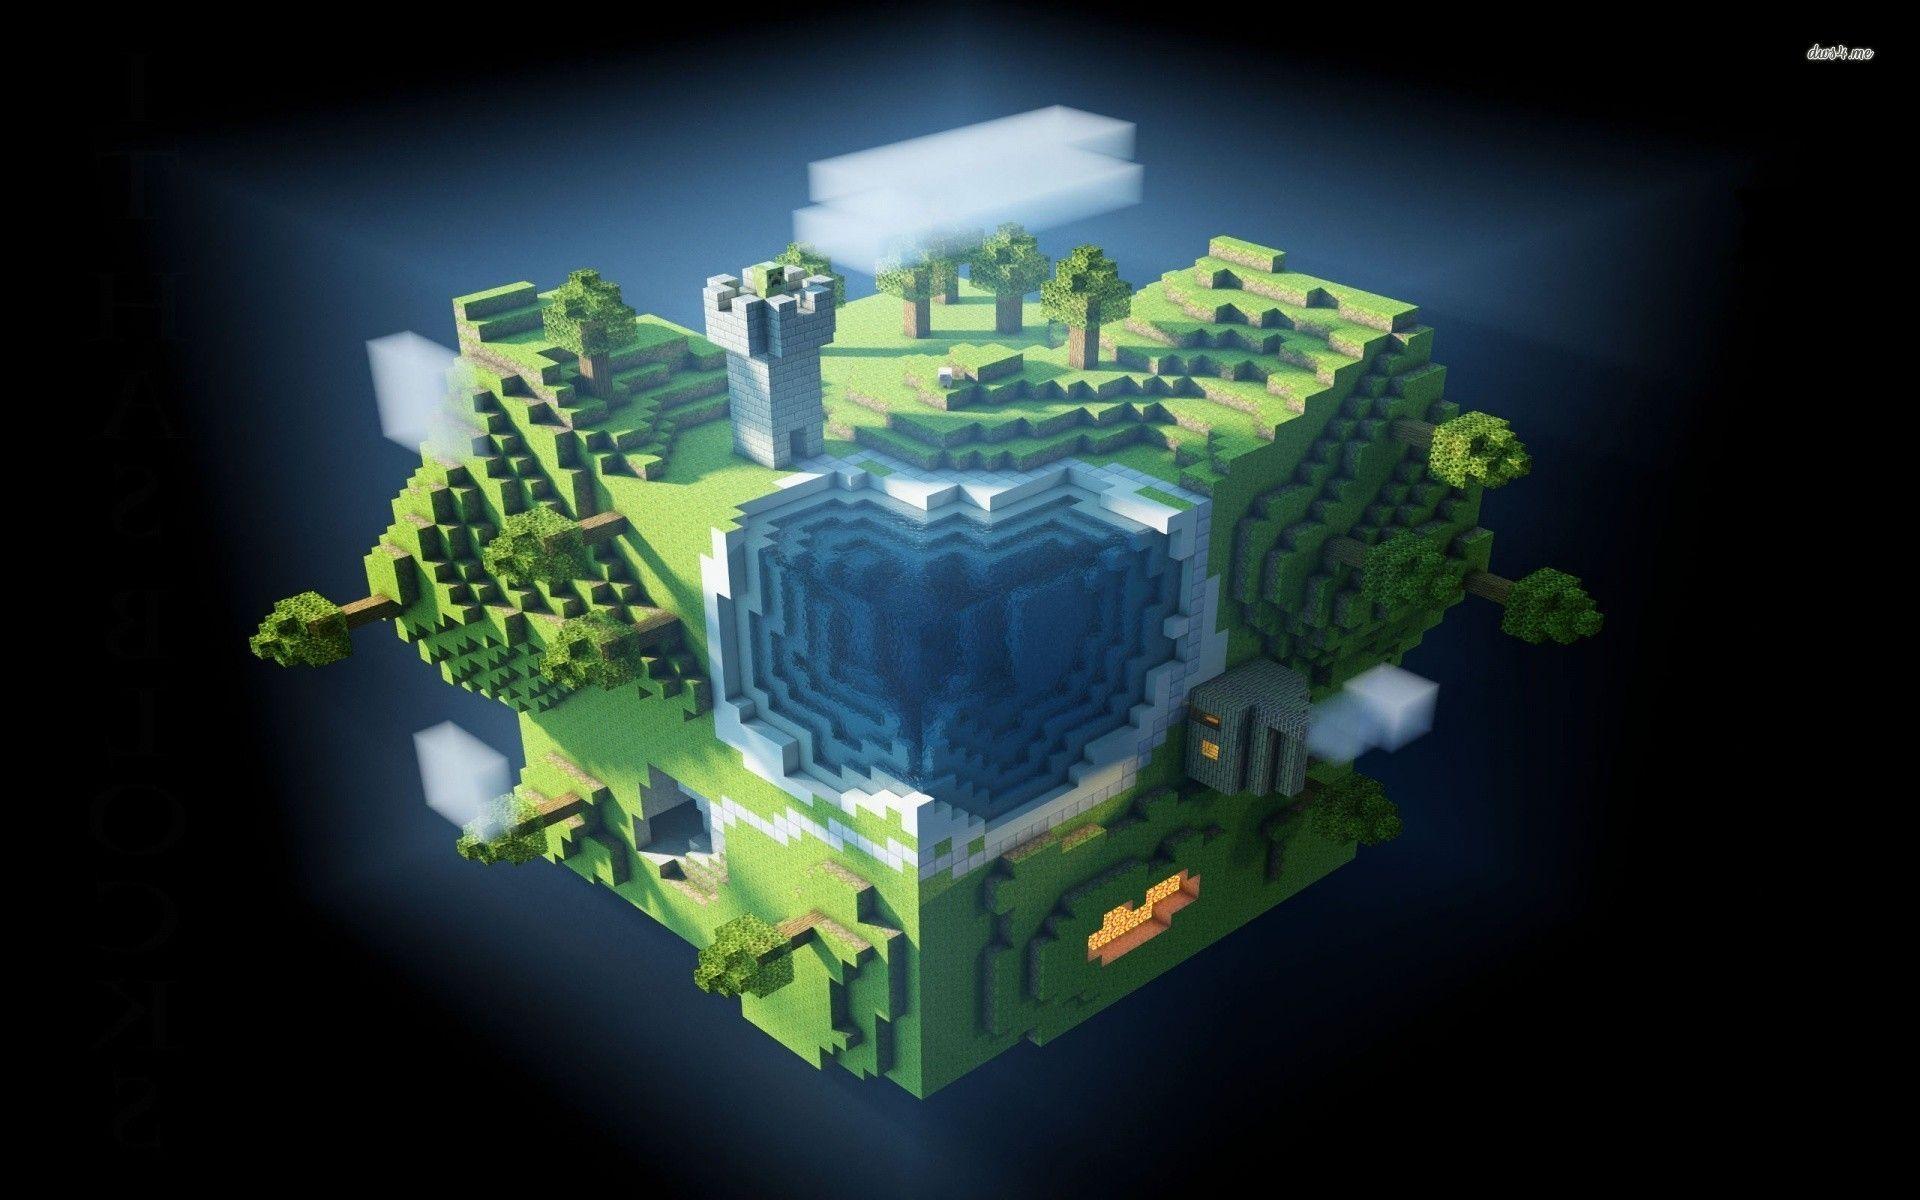 Nếu bạn muốn có một hình nền Minecraft đẹp nhưng không biết bắt đầu từ đâu, thì đến với Good Minecraft Backgrounds! Đây là một bộ sưu tập các hình nền Minecraft đẹp nhất mà bạn không thể bỏ qua. Với các tùy chọn đa dạng, bạn sẽ dễ dàng tìm thấy hình nền phù hợp với sở thích của mình.